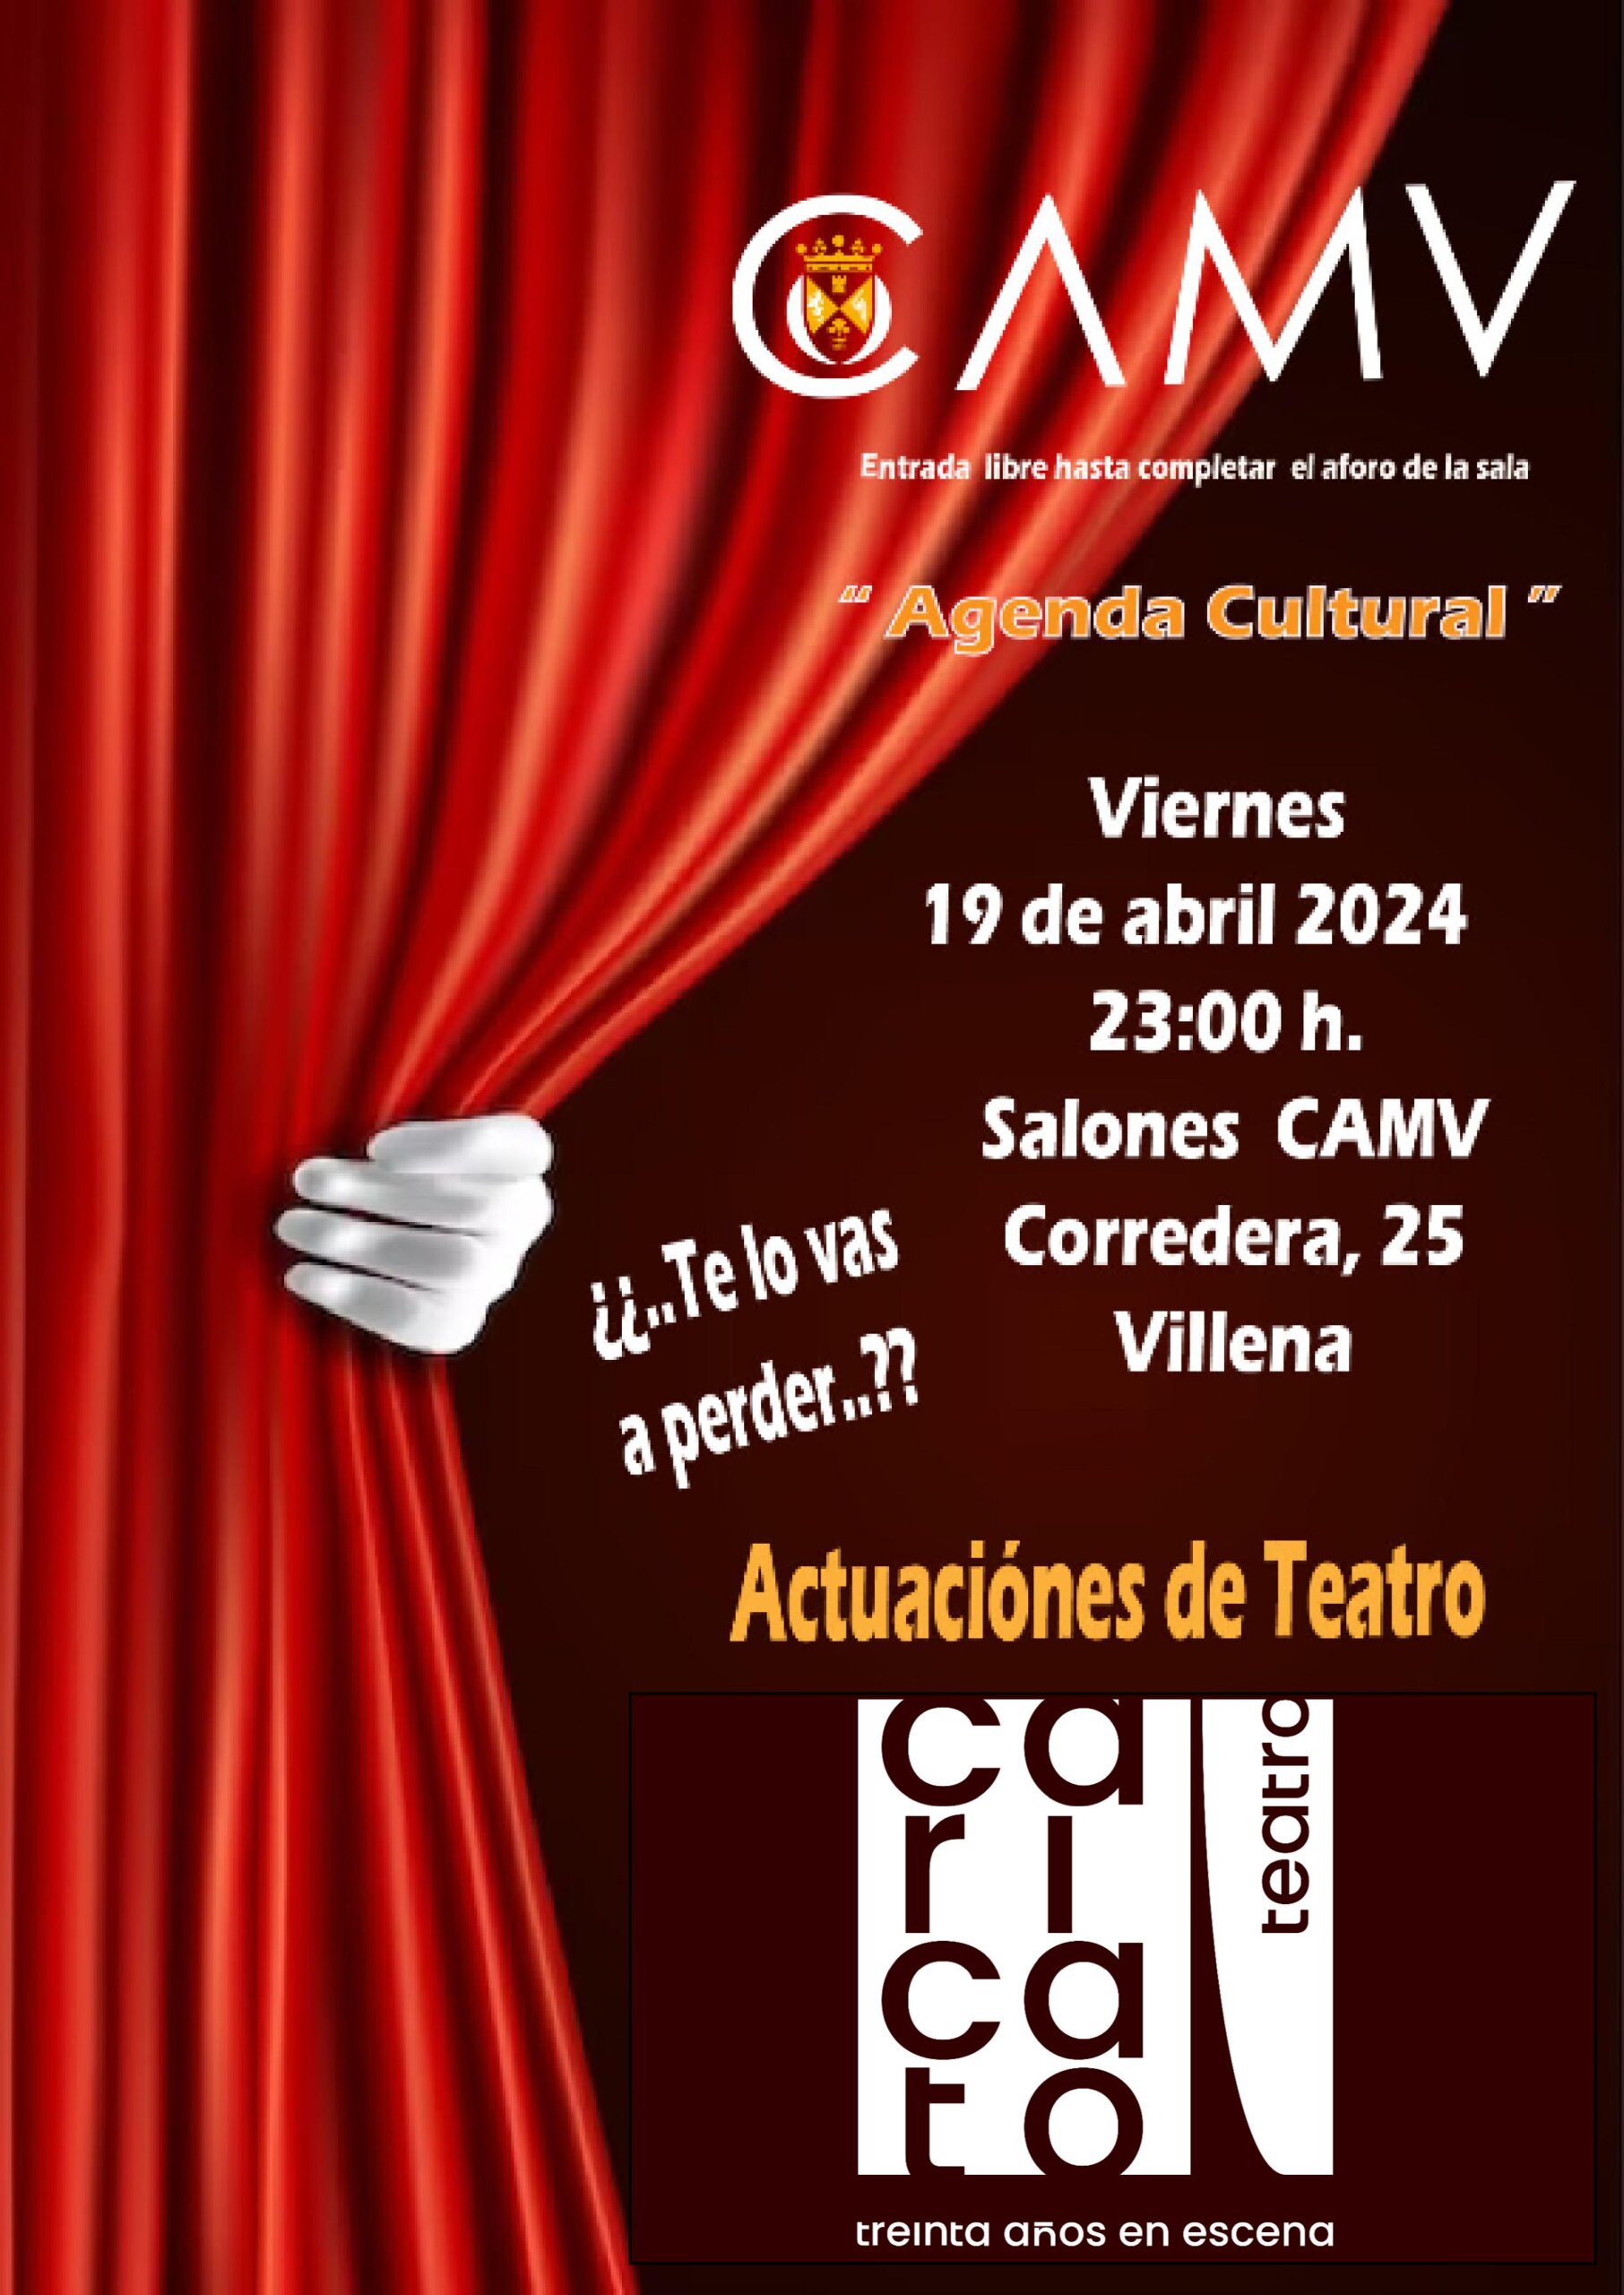 Caricato Teatro propone un café-teatro en el CAMV con entrada libre